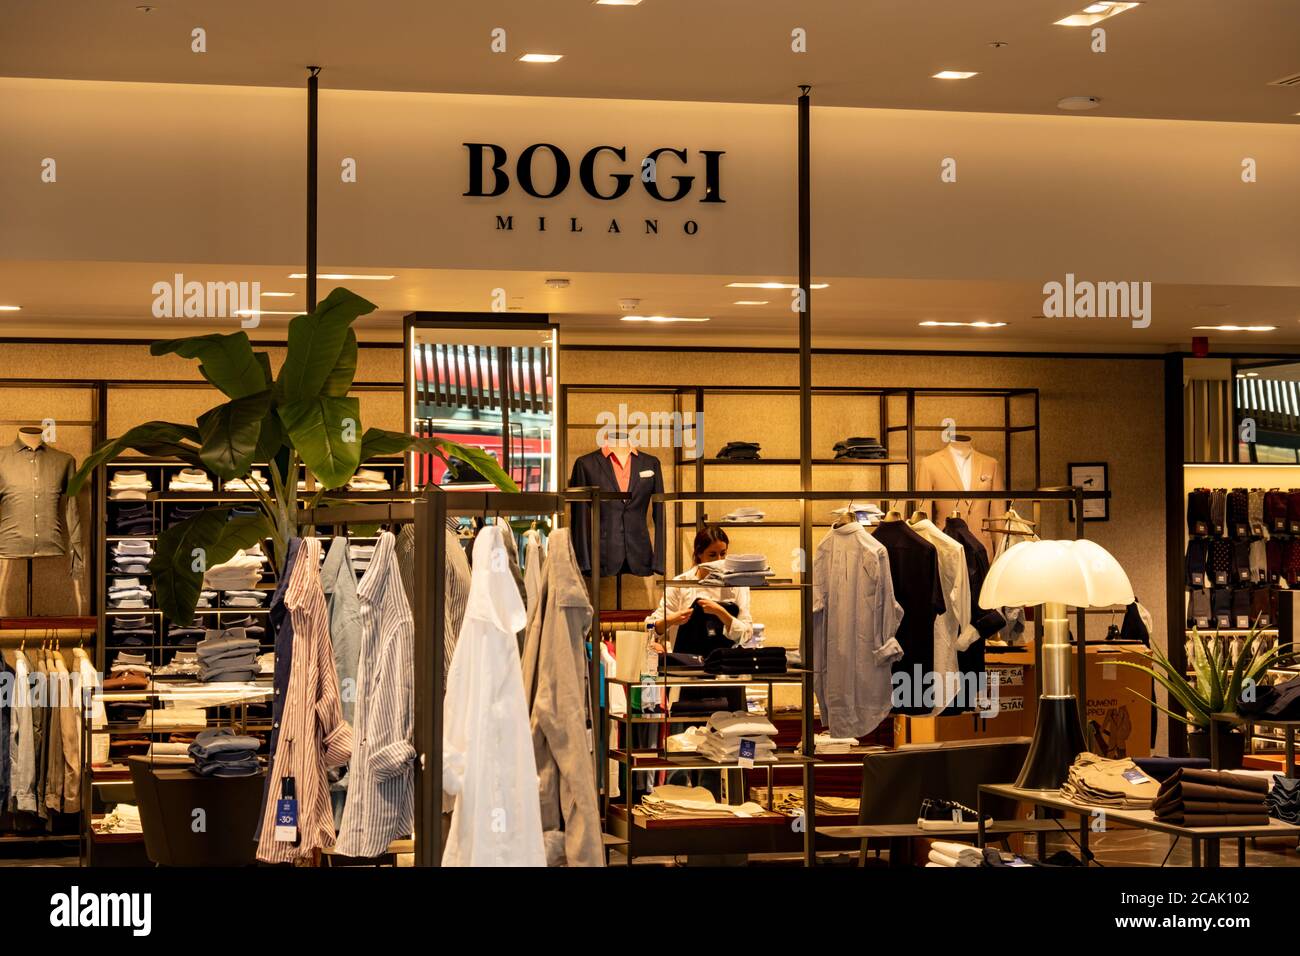 Londres- Boggi Milano magasin intérieur sur Regent Street, une marque italienne de mode Banque D'Images